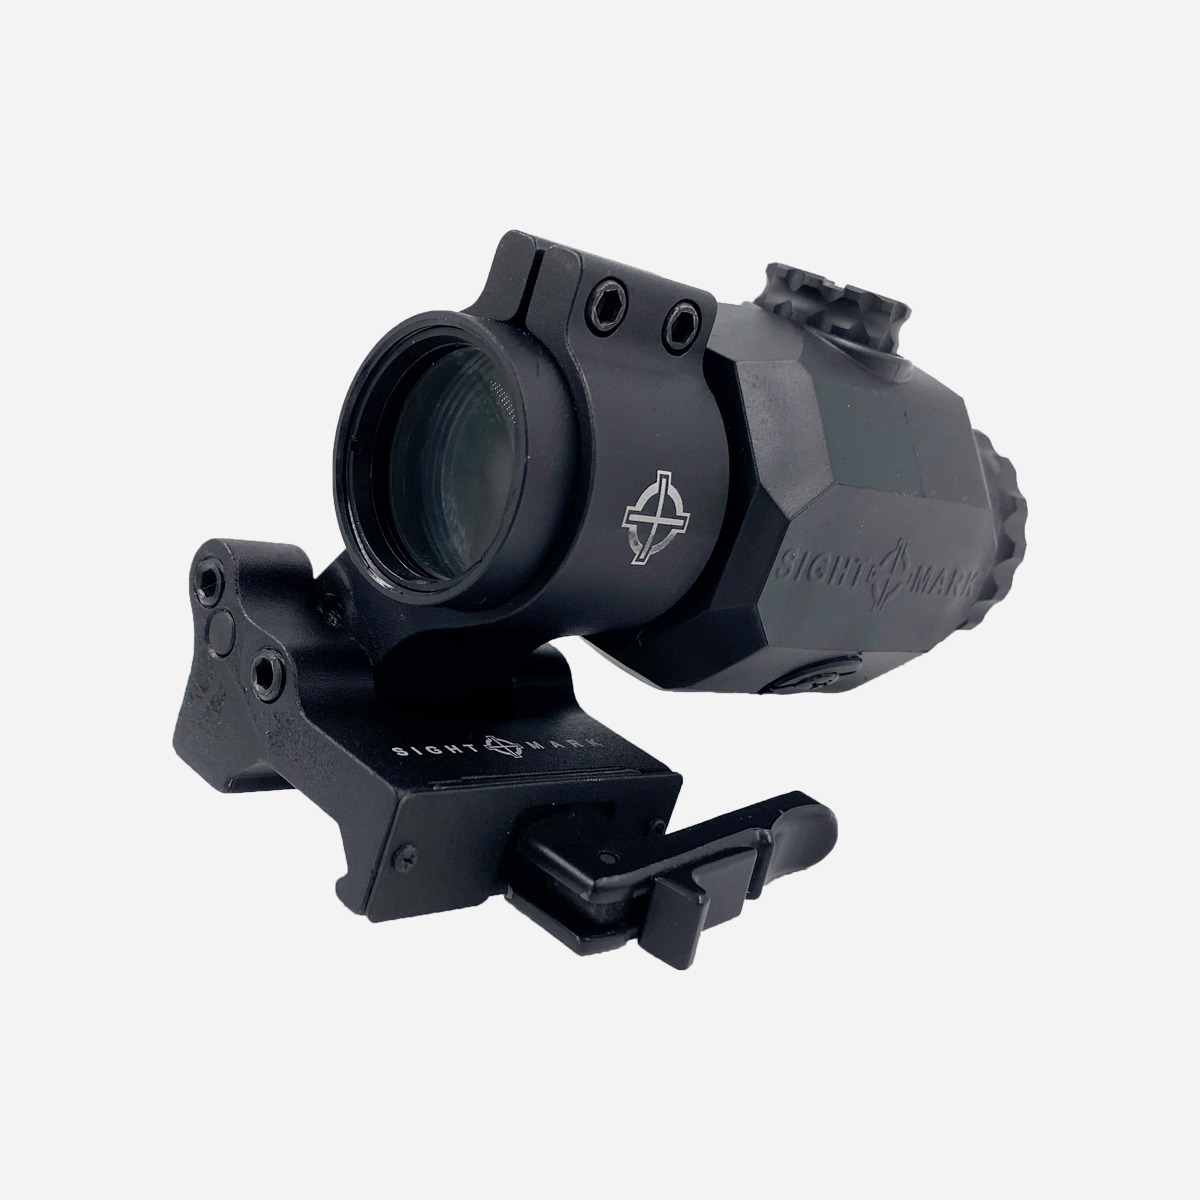 Sightmark – Magnifier XT-3